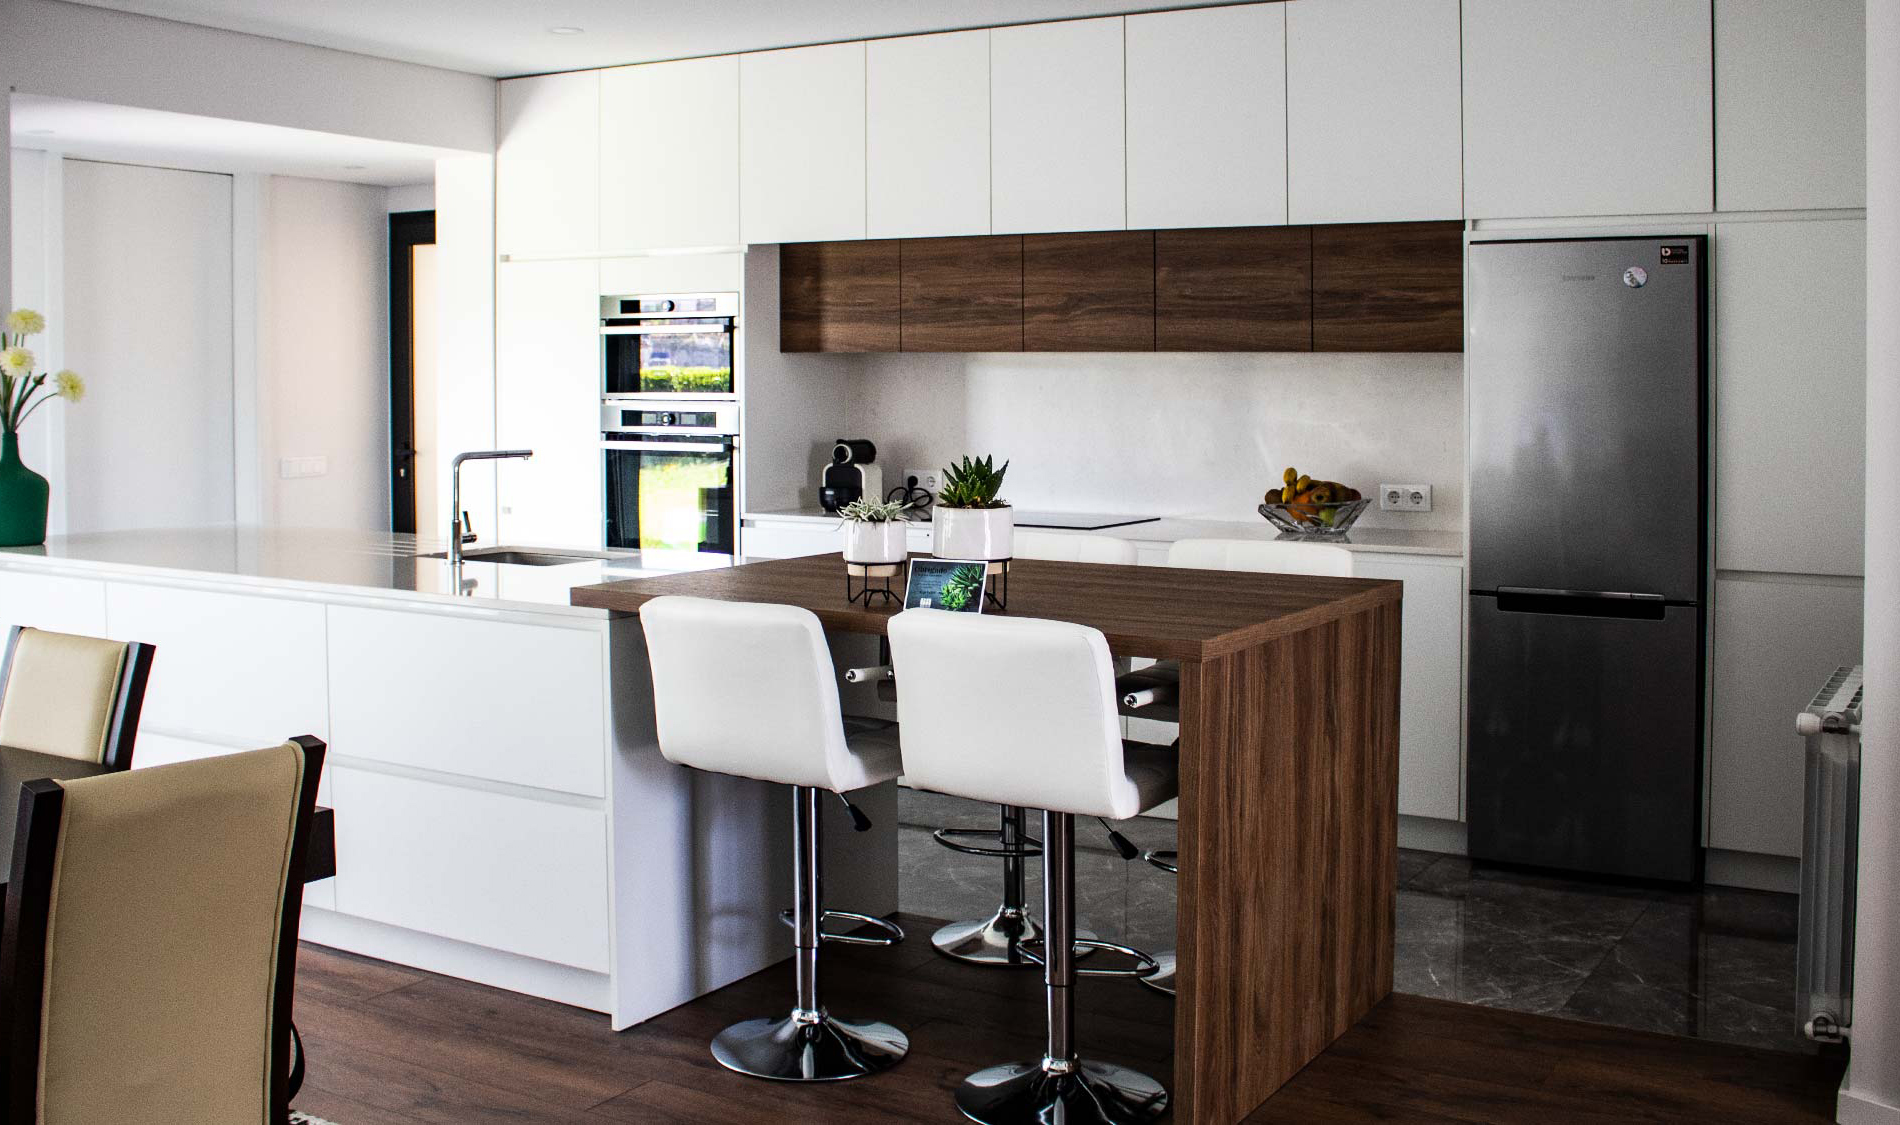 Casa rés-do-chão moderna com linhas simples, que vai adorar! Cozinha Open space. Projeto Obra Atelier